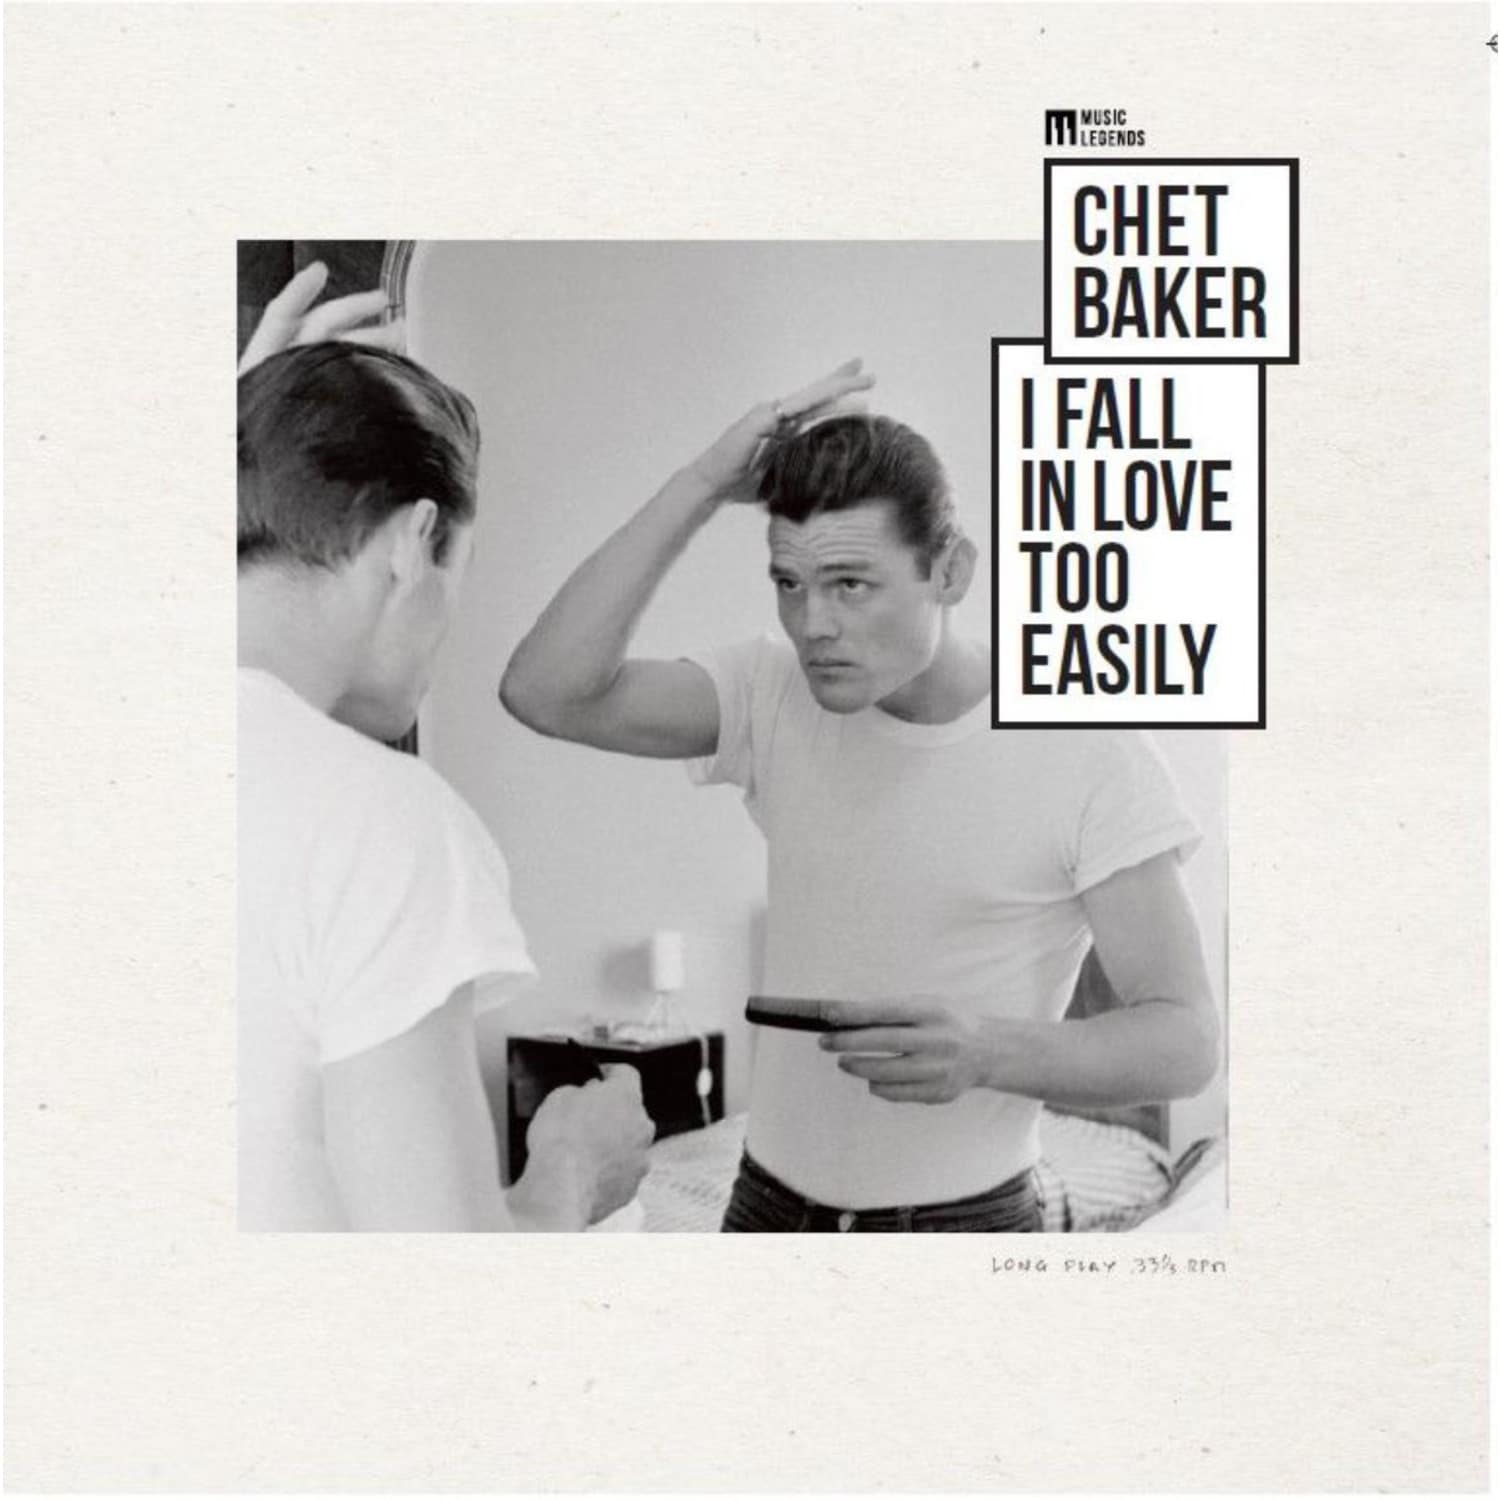 Chet Baker - I FALL IN LOVE TOO EASILY 